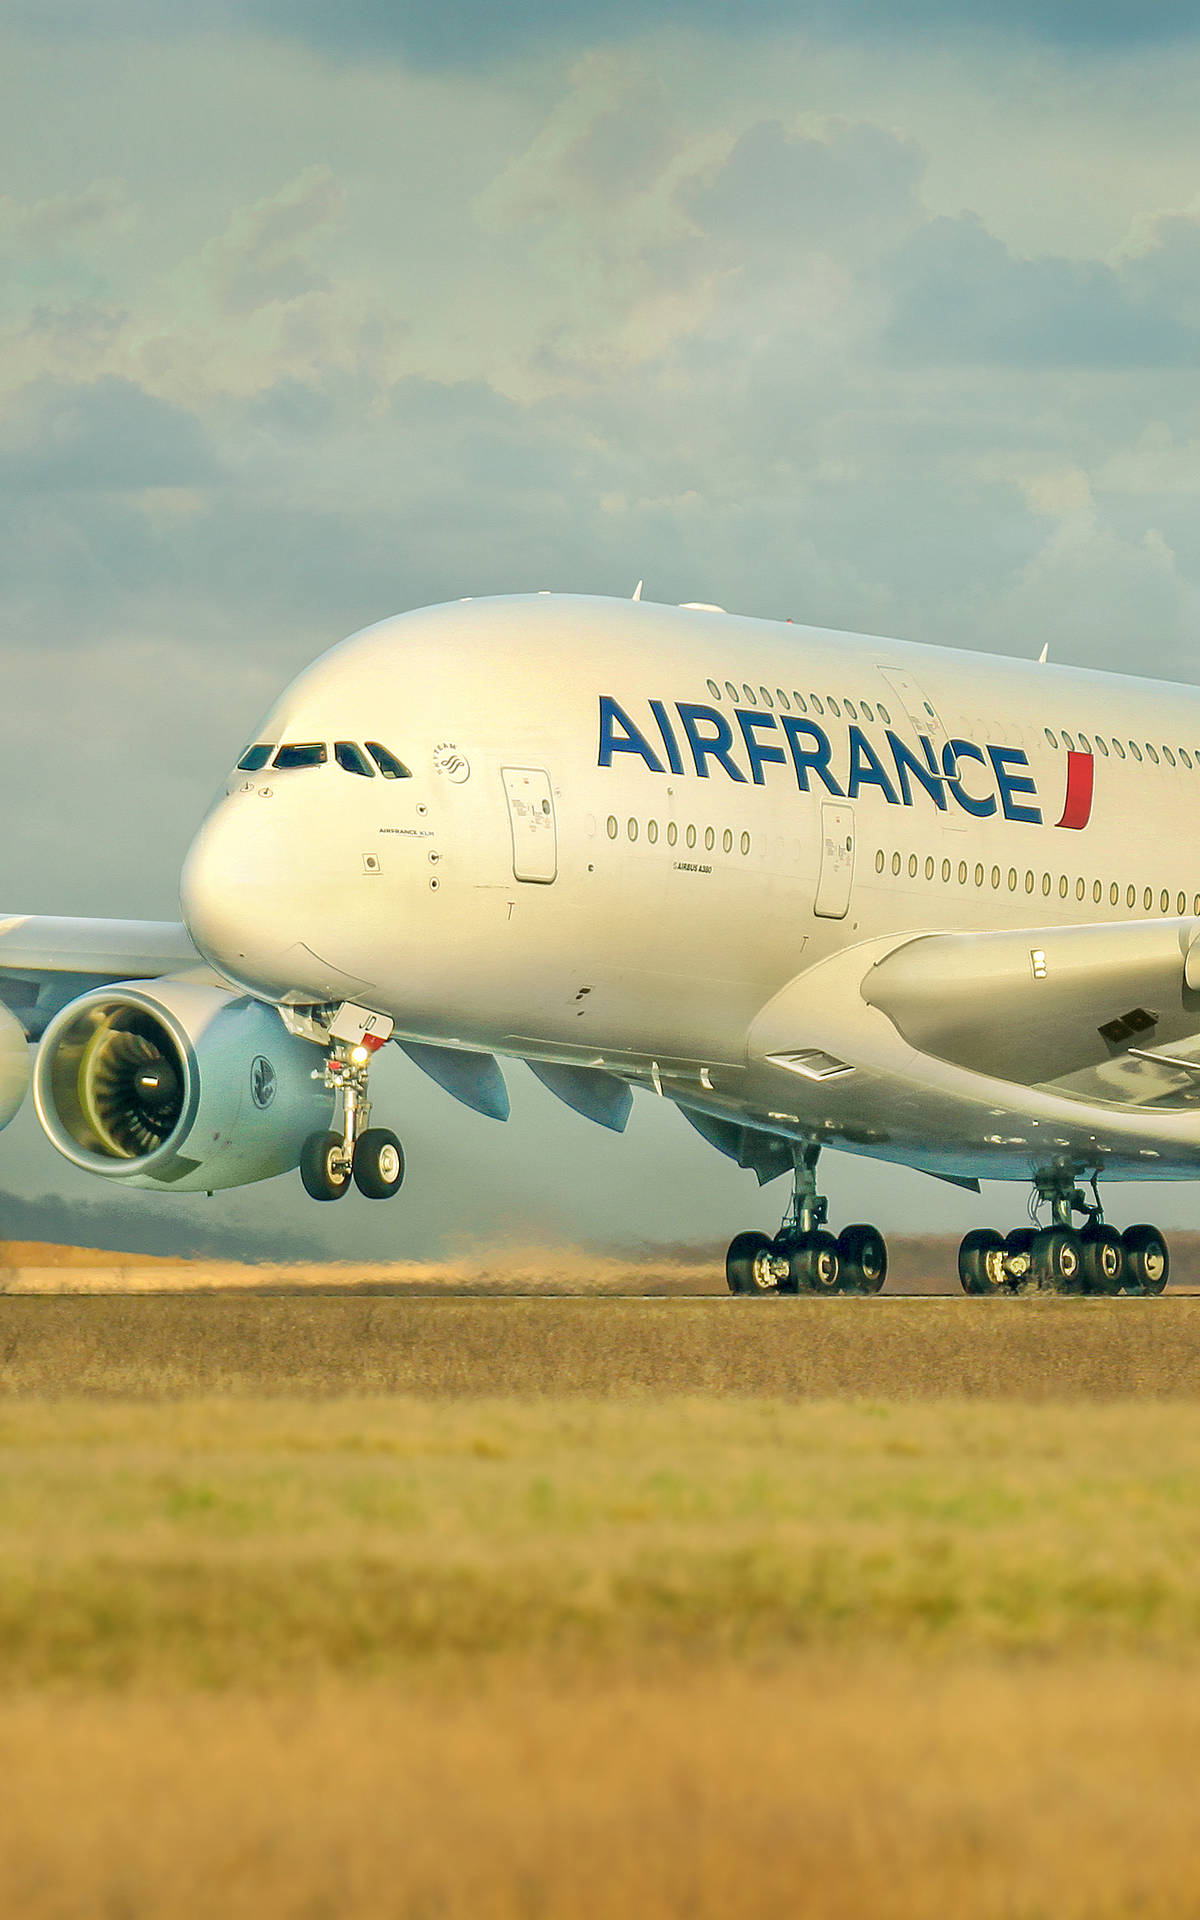 Air France Air Carrier Airbus A380 On Runway Wallpaper